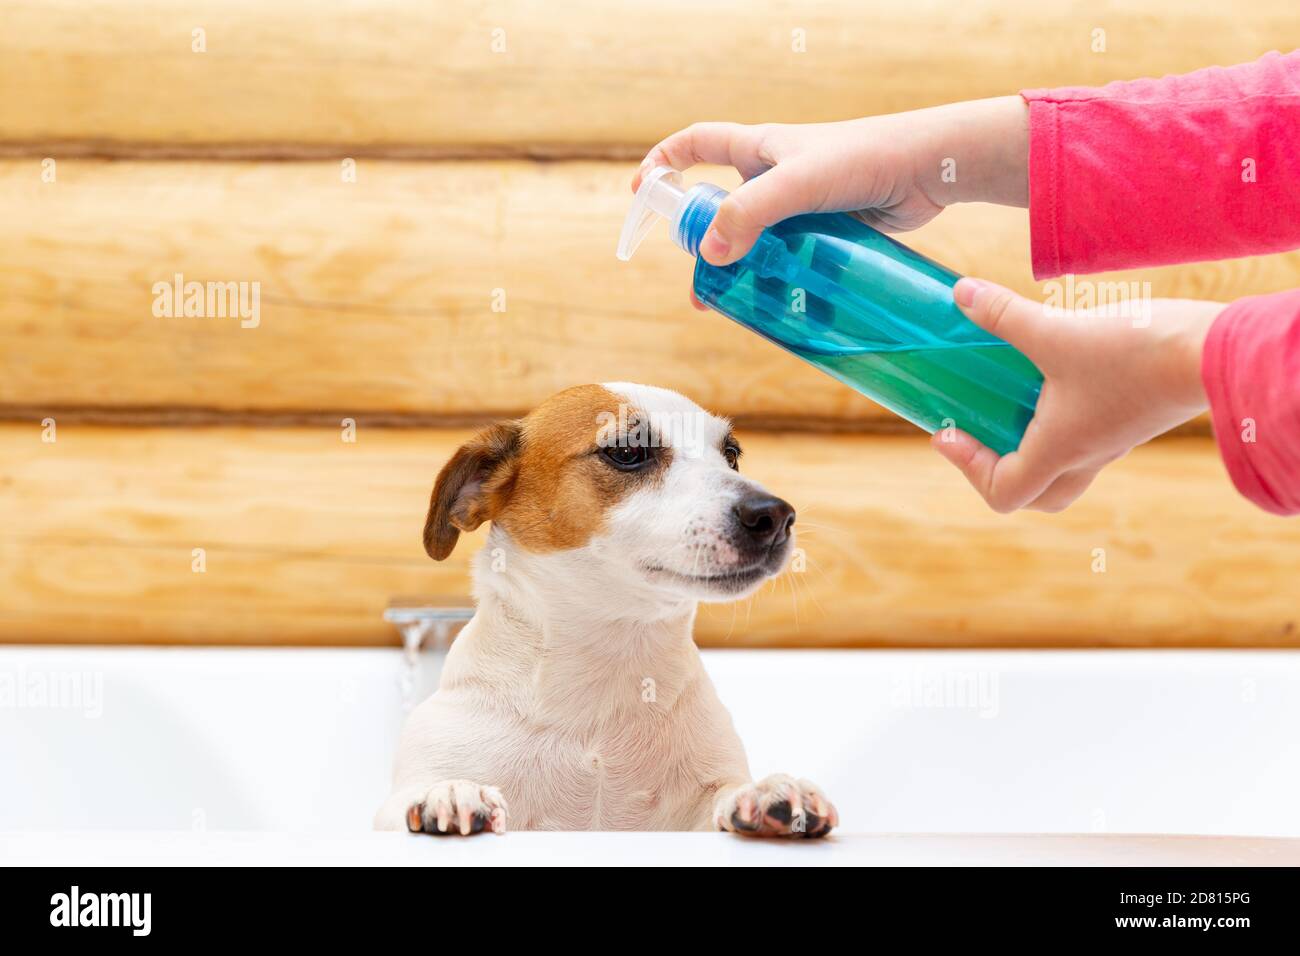 Un niño lava a su perro Jack Russell Terrier con champú o jabón en el baño.  Cuidar la salud de las mascotas. Prevención de pulgas y parásitos  Fotografía de stock - Alamy